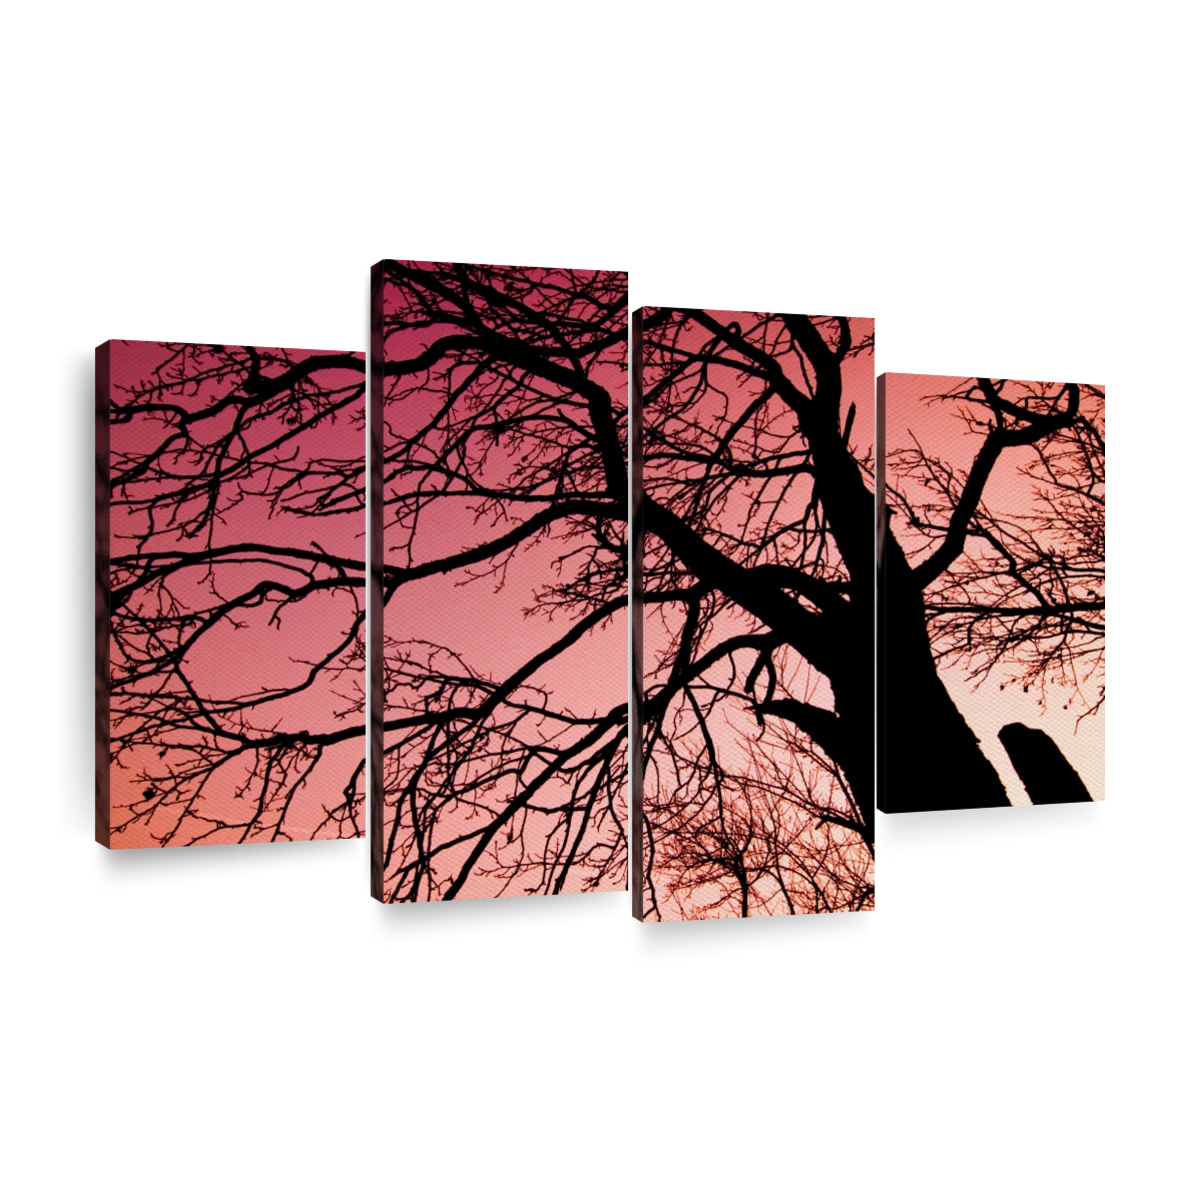 dead tree silhouette